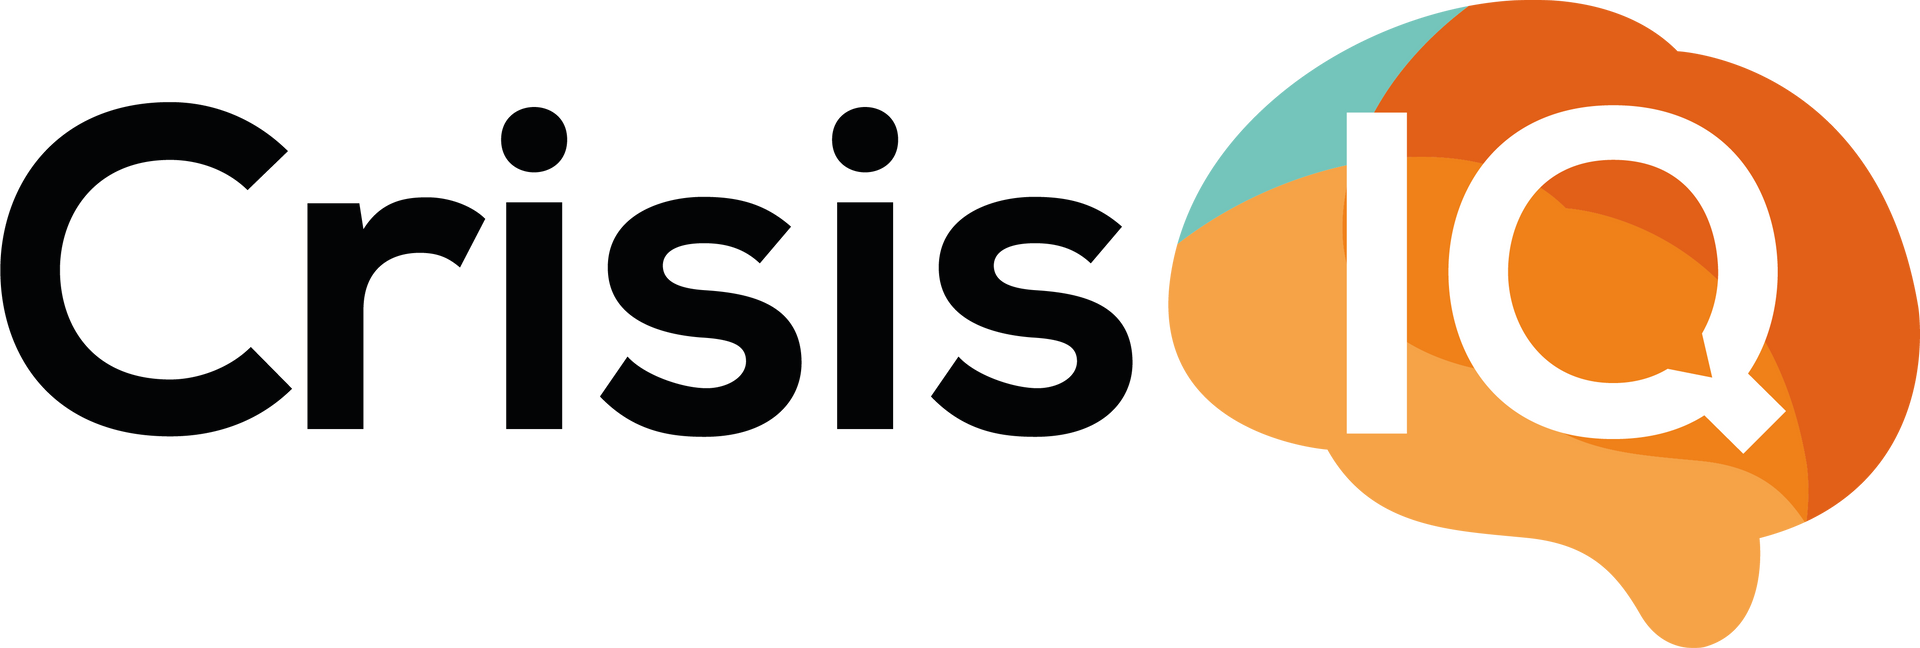 Crisis IQ logo